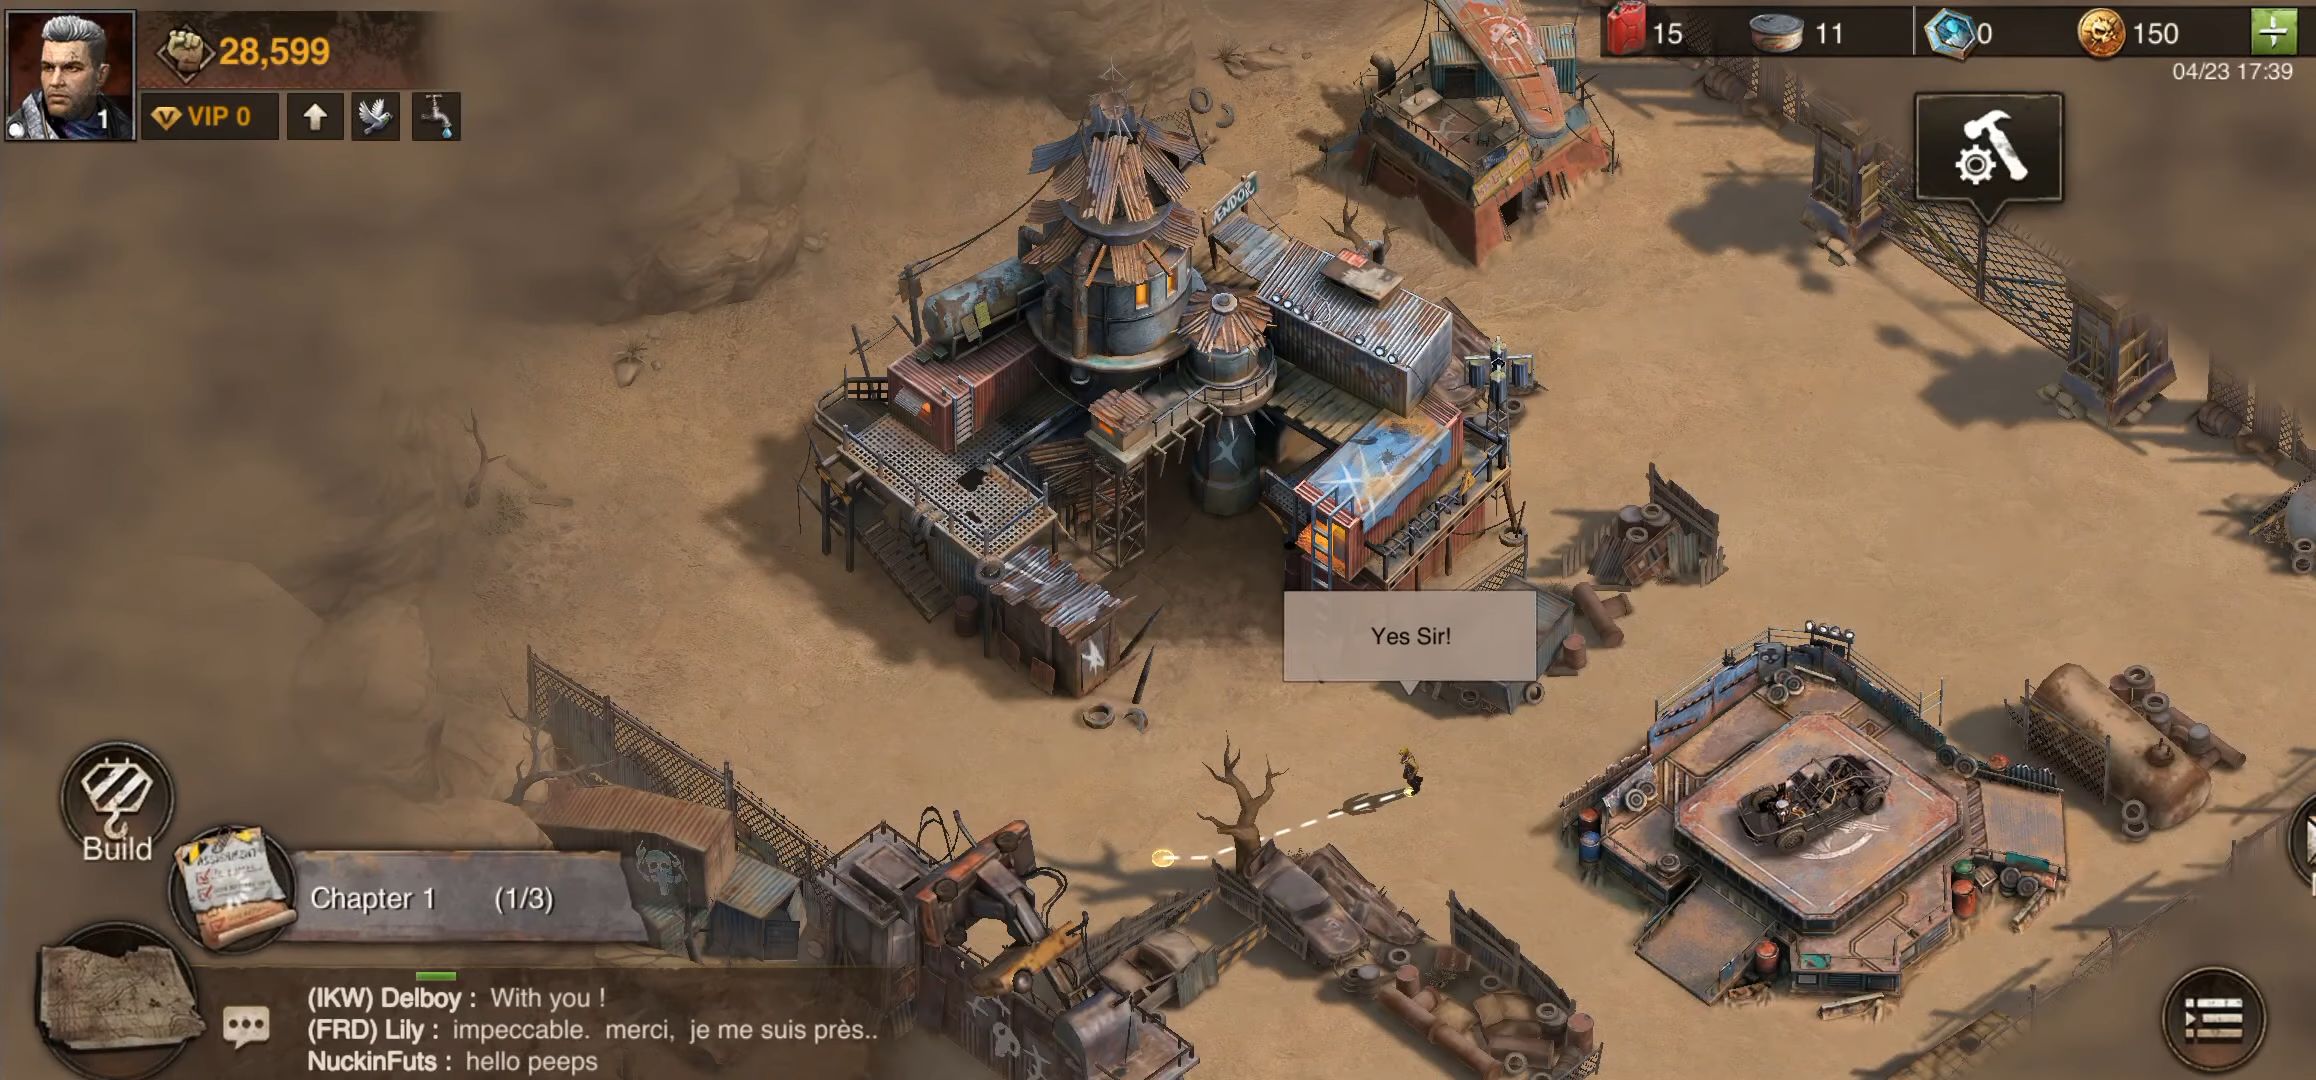 Mad Survivor: Wasteland War - Android game screenshots.